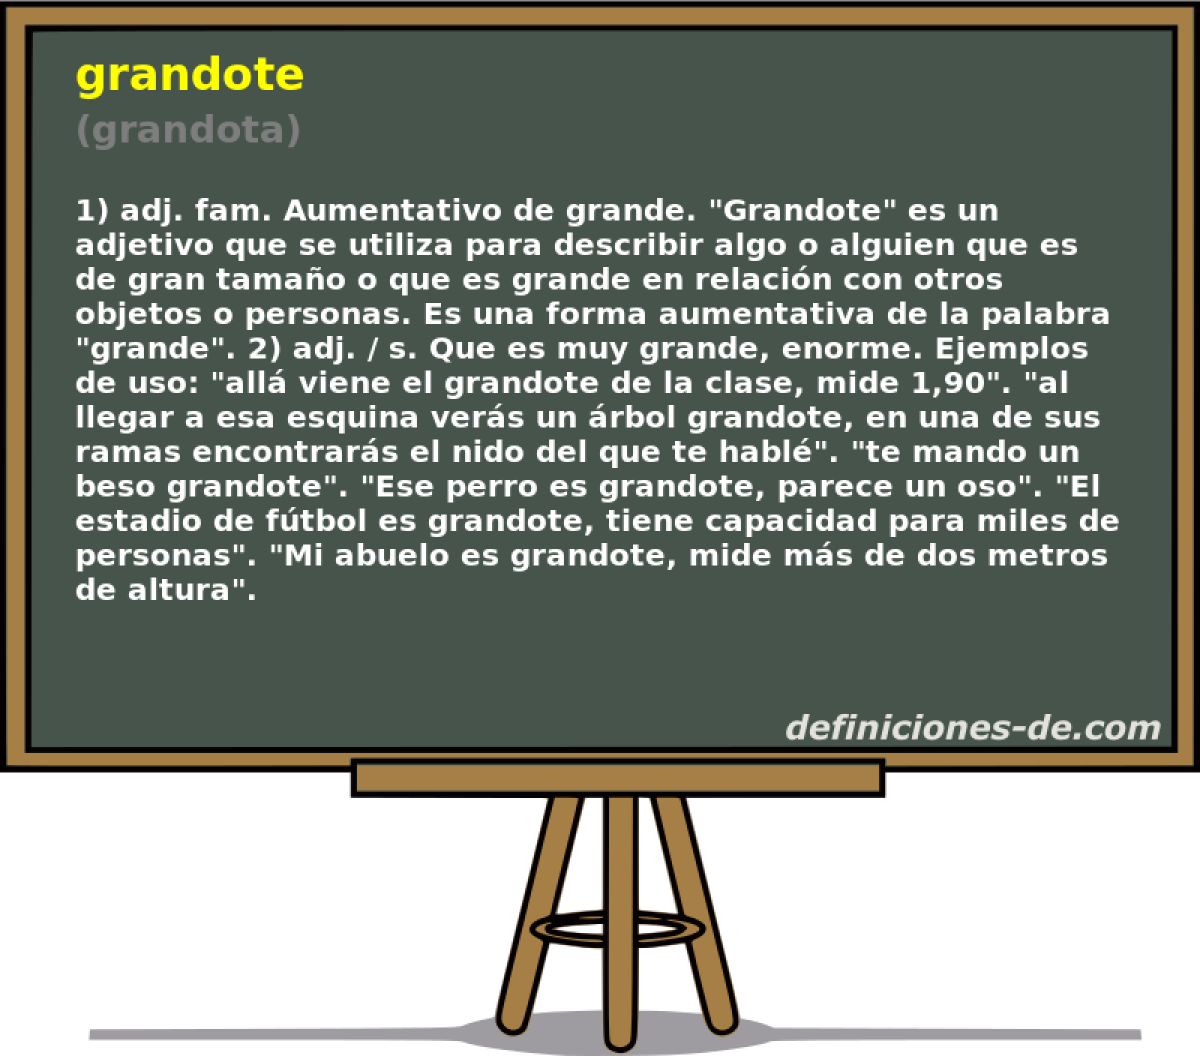 grandote (grandota)